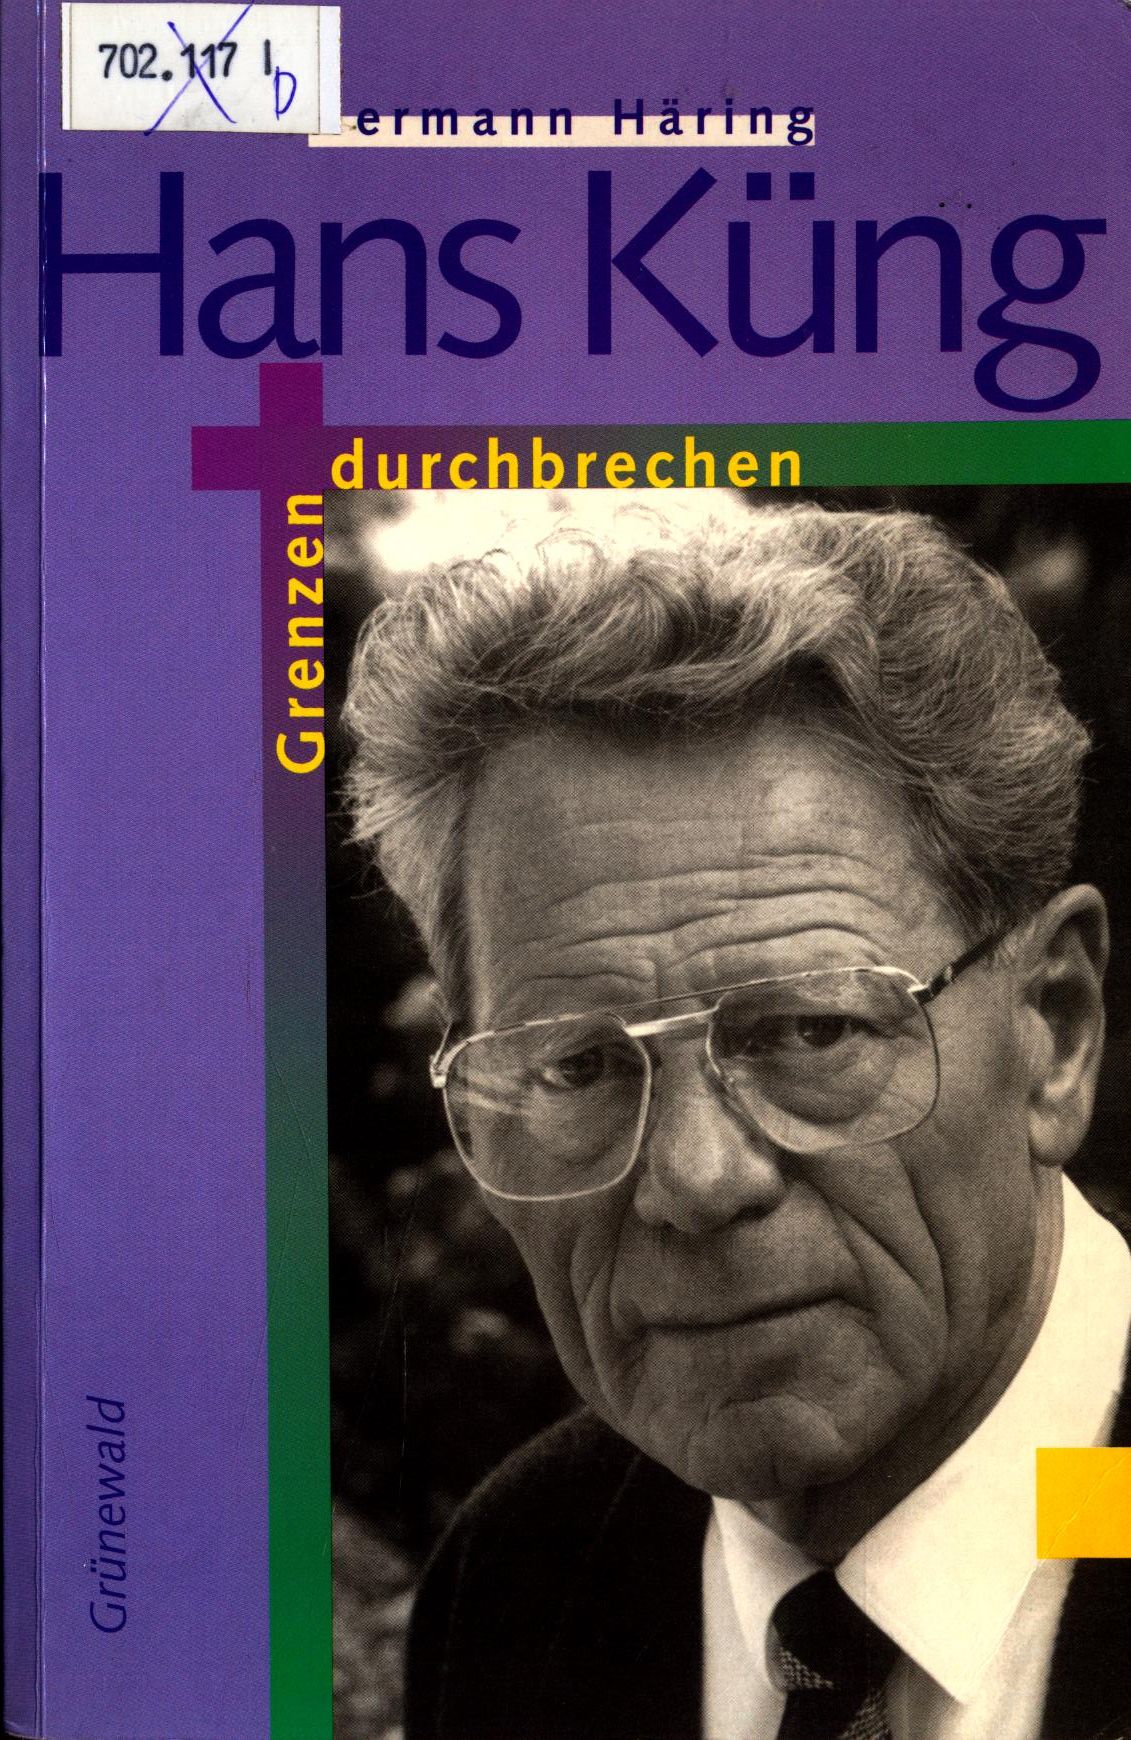 Hans Küng Grenzen durchbrechen - Häring, Hermann